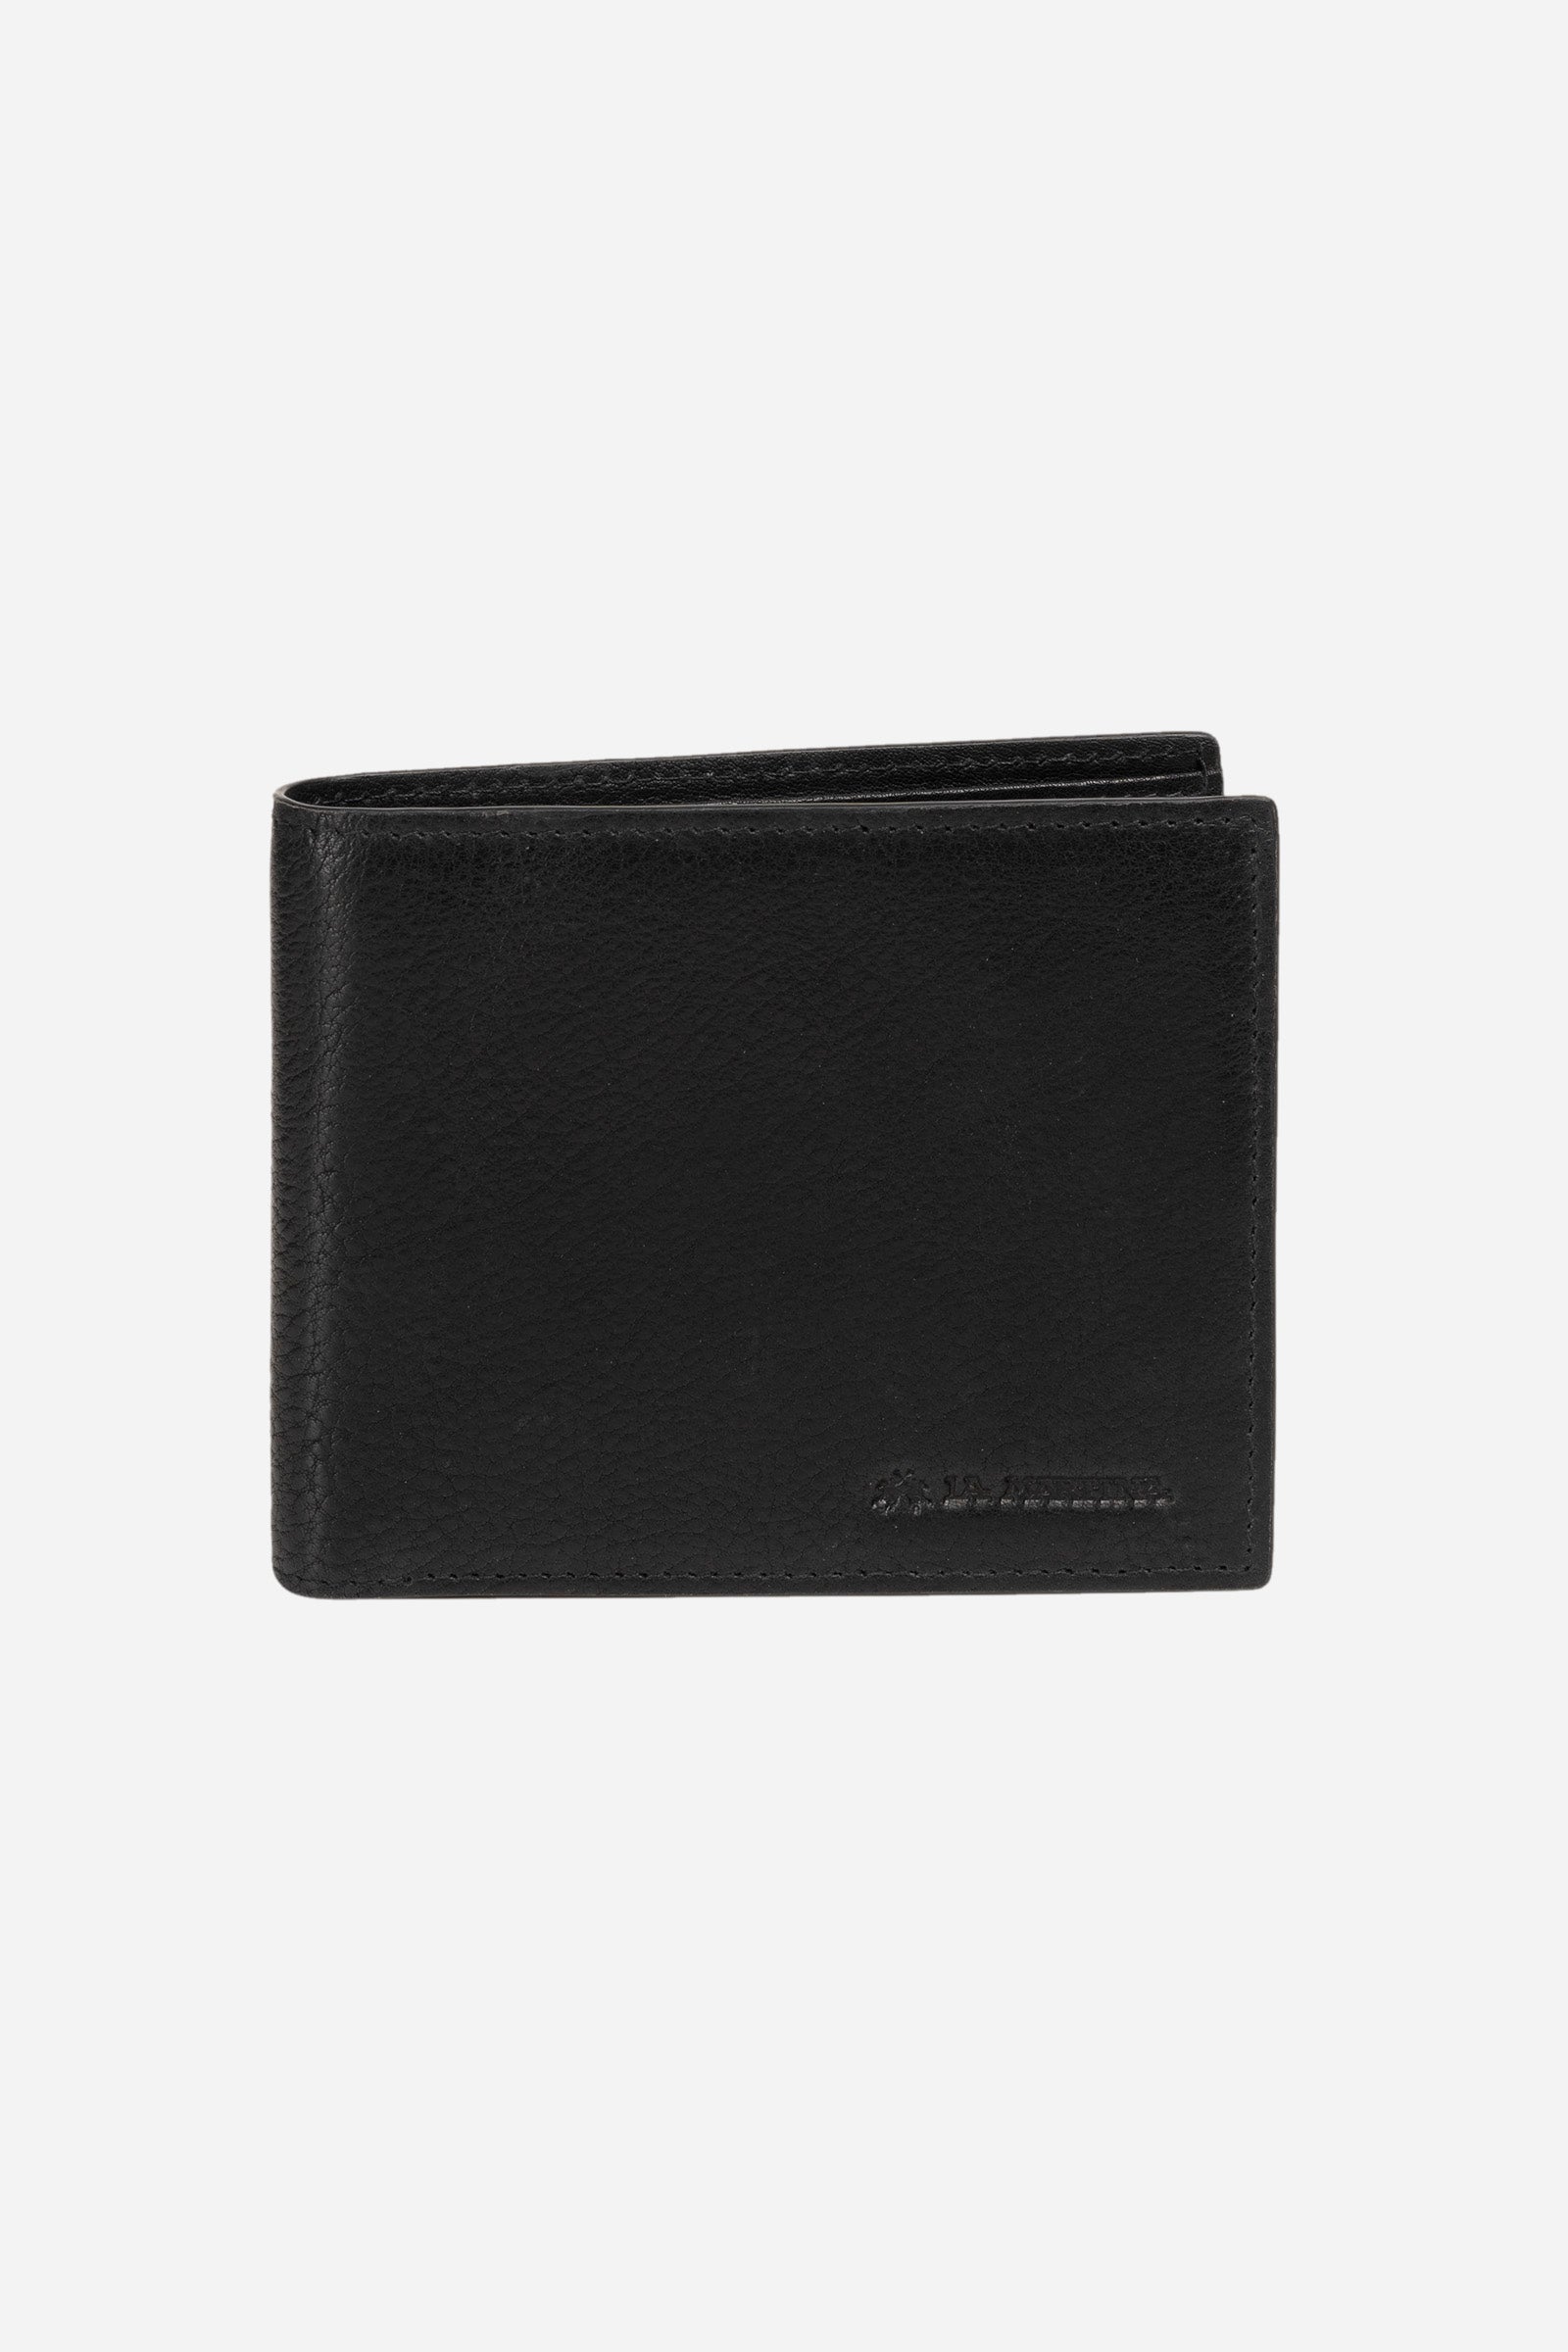 Men's leather wallet - Paulo